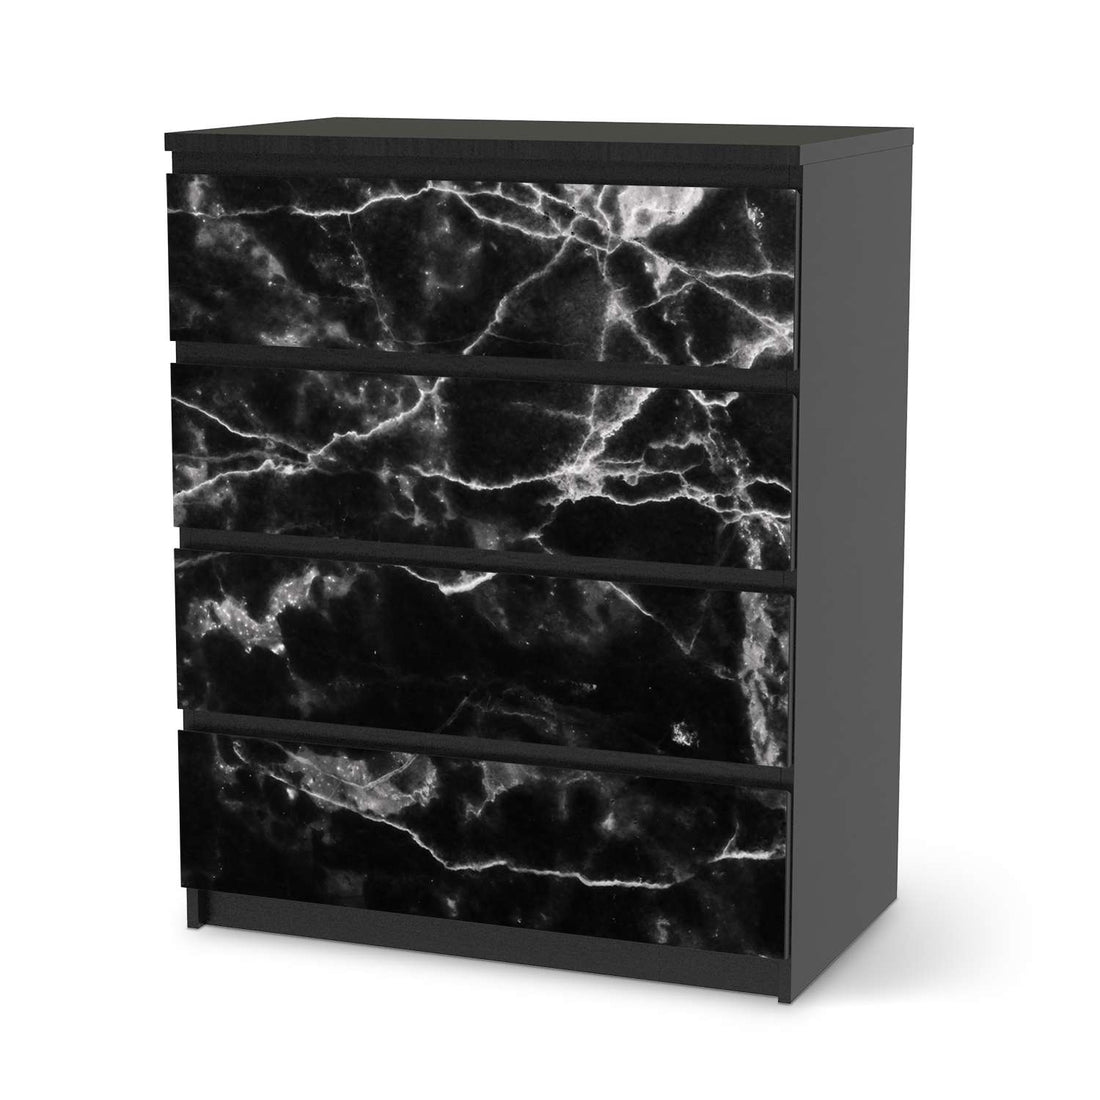 Folie für Möbel Marmor schwarz - IKEA Malm Kommode 4 Schubladen - schwarz